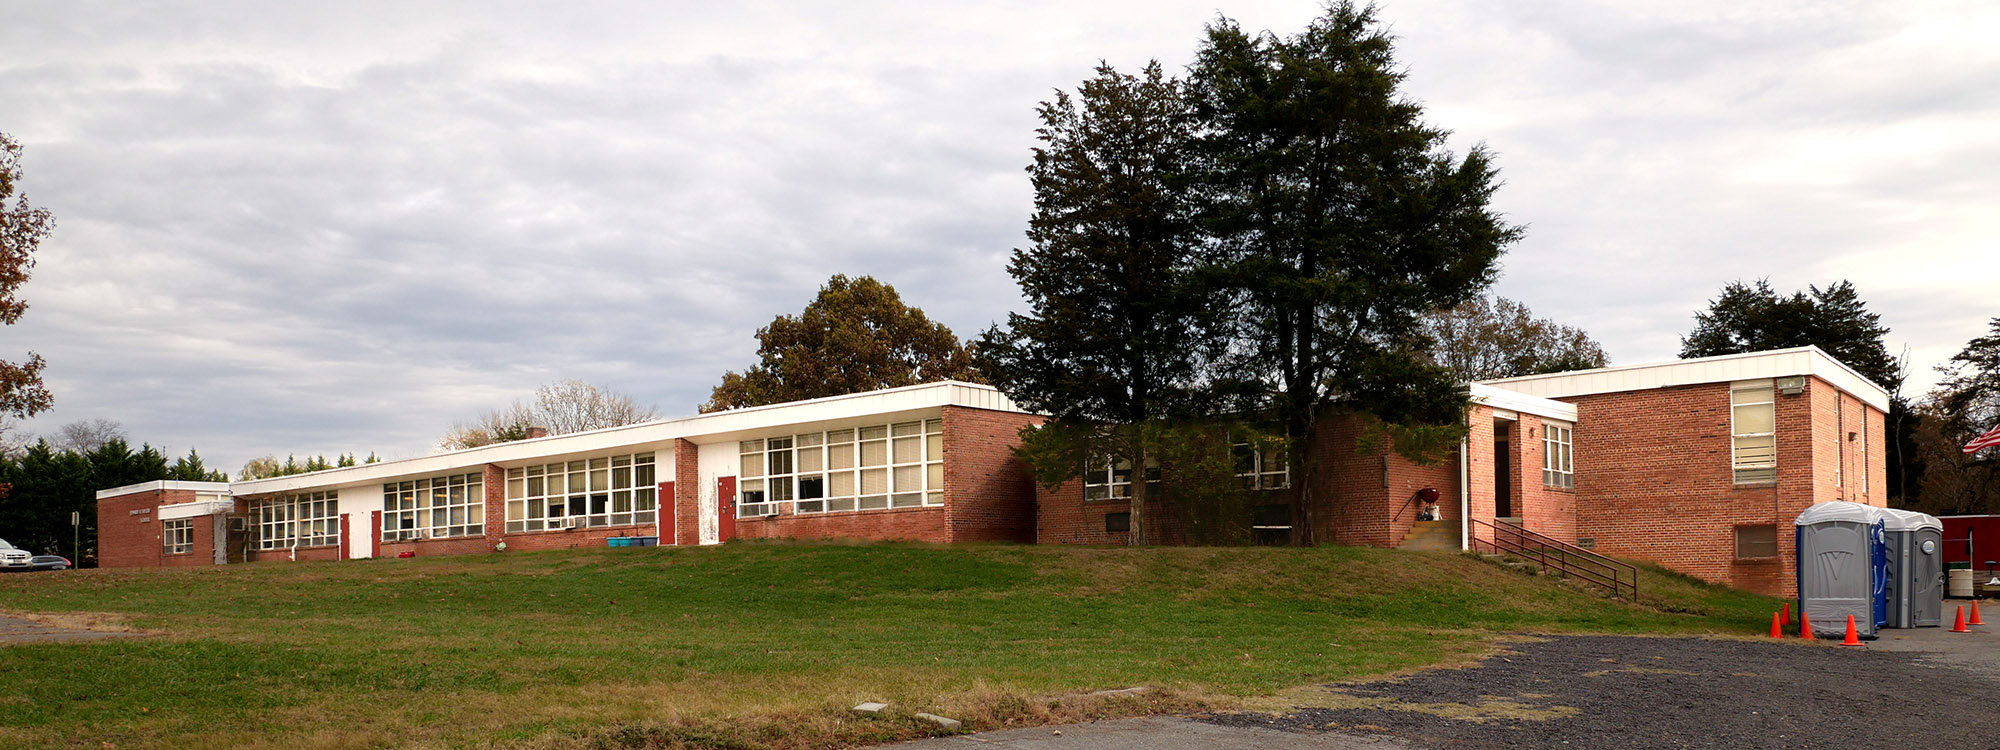 Edward U. Taylor School building